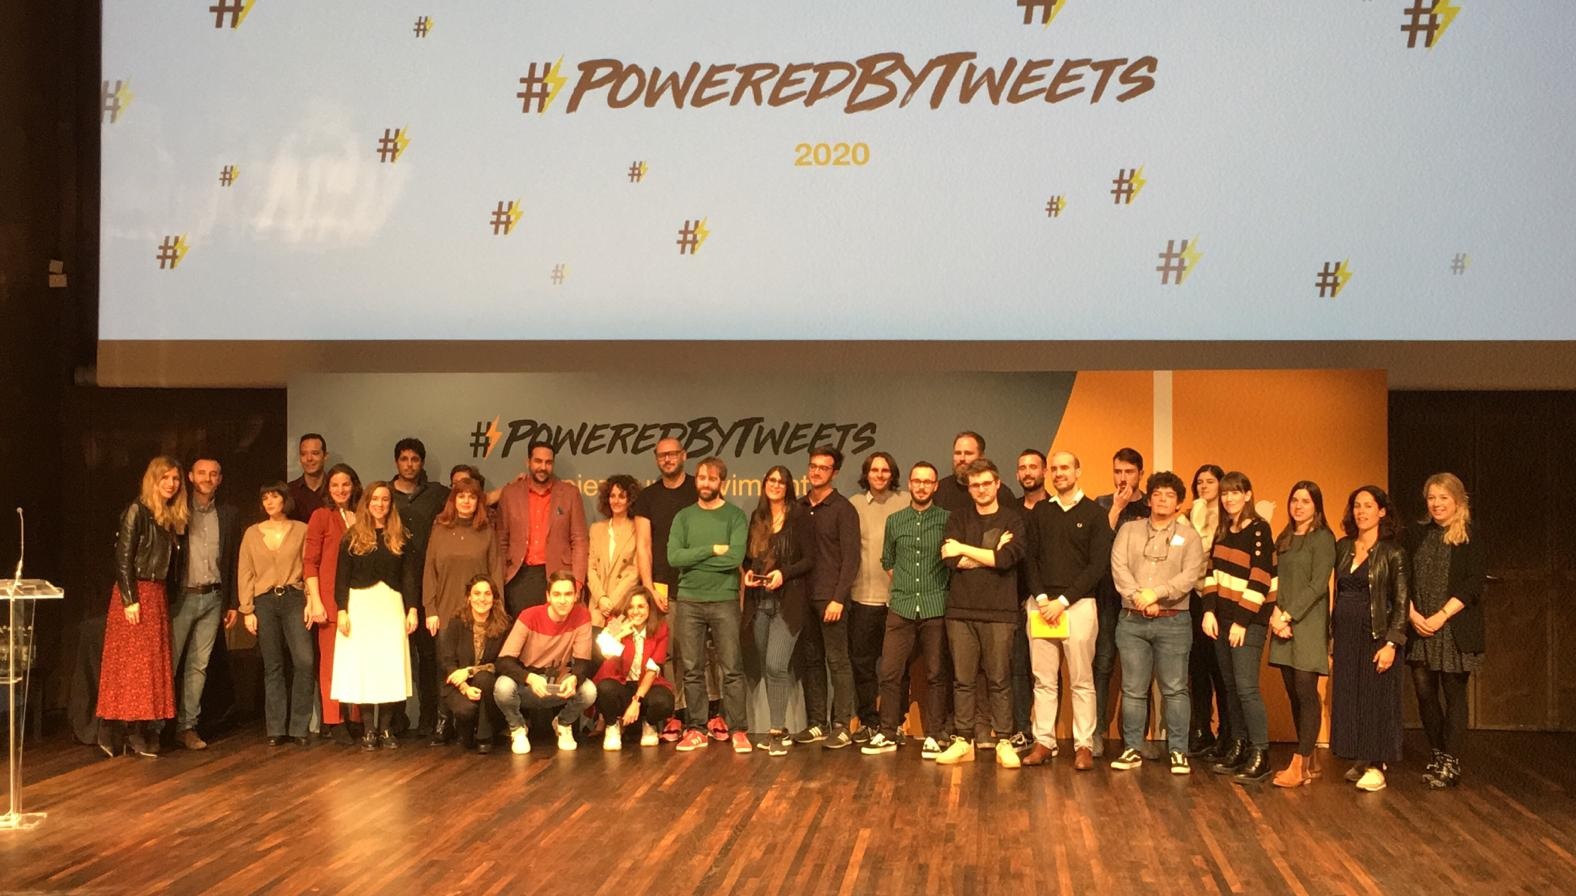 ganadores , #poweredbytweets, programapublicidad